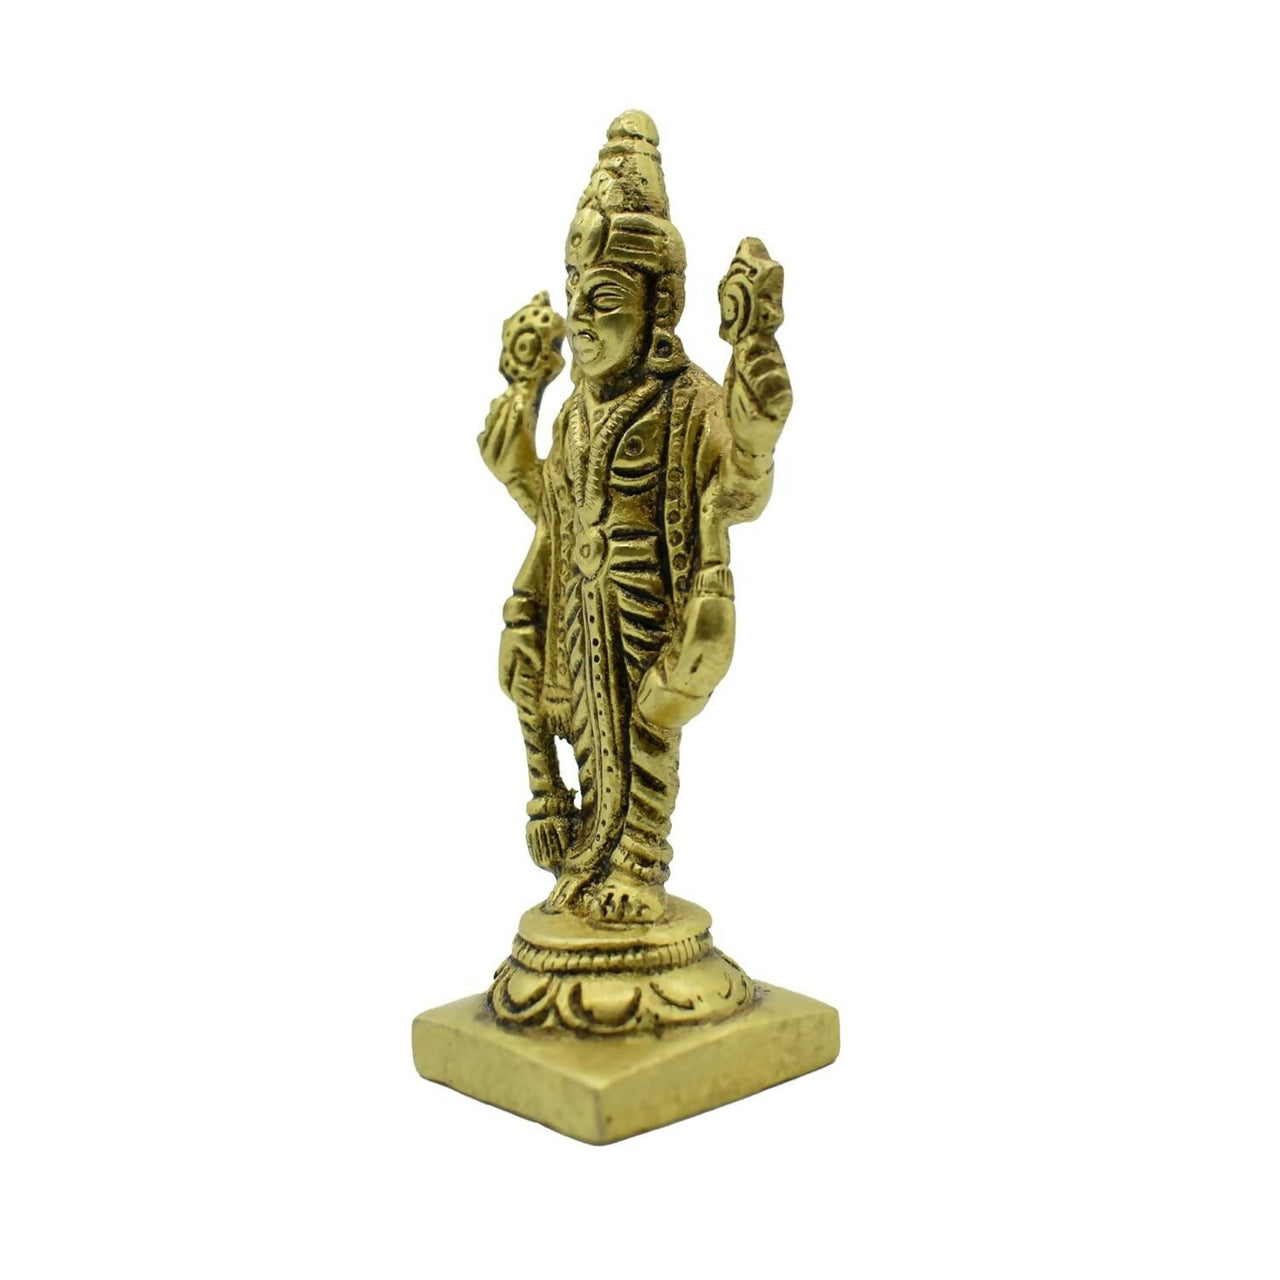 Puja N Pujari Lord Vishnu Murty Idol - Distacart